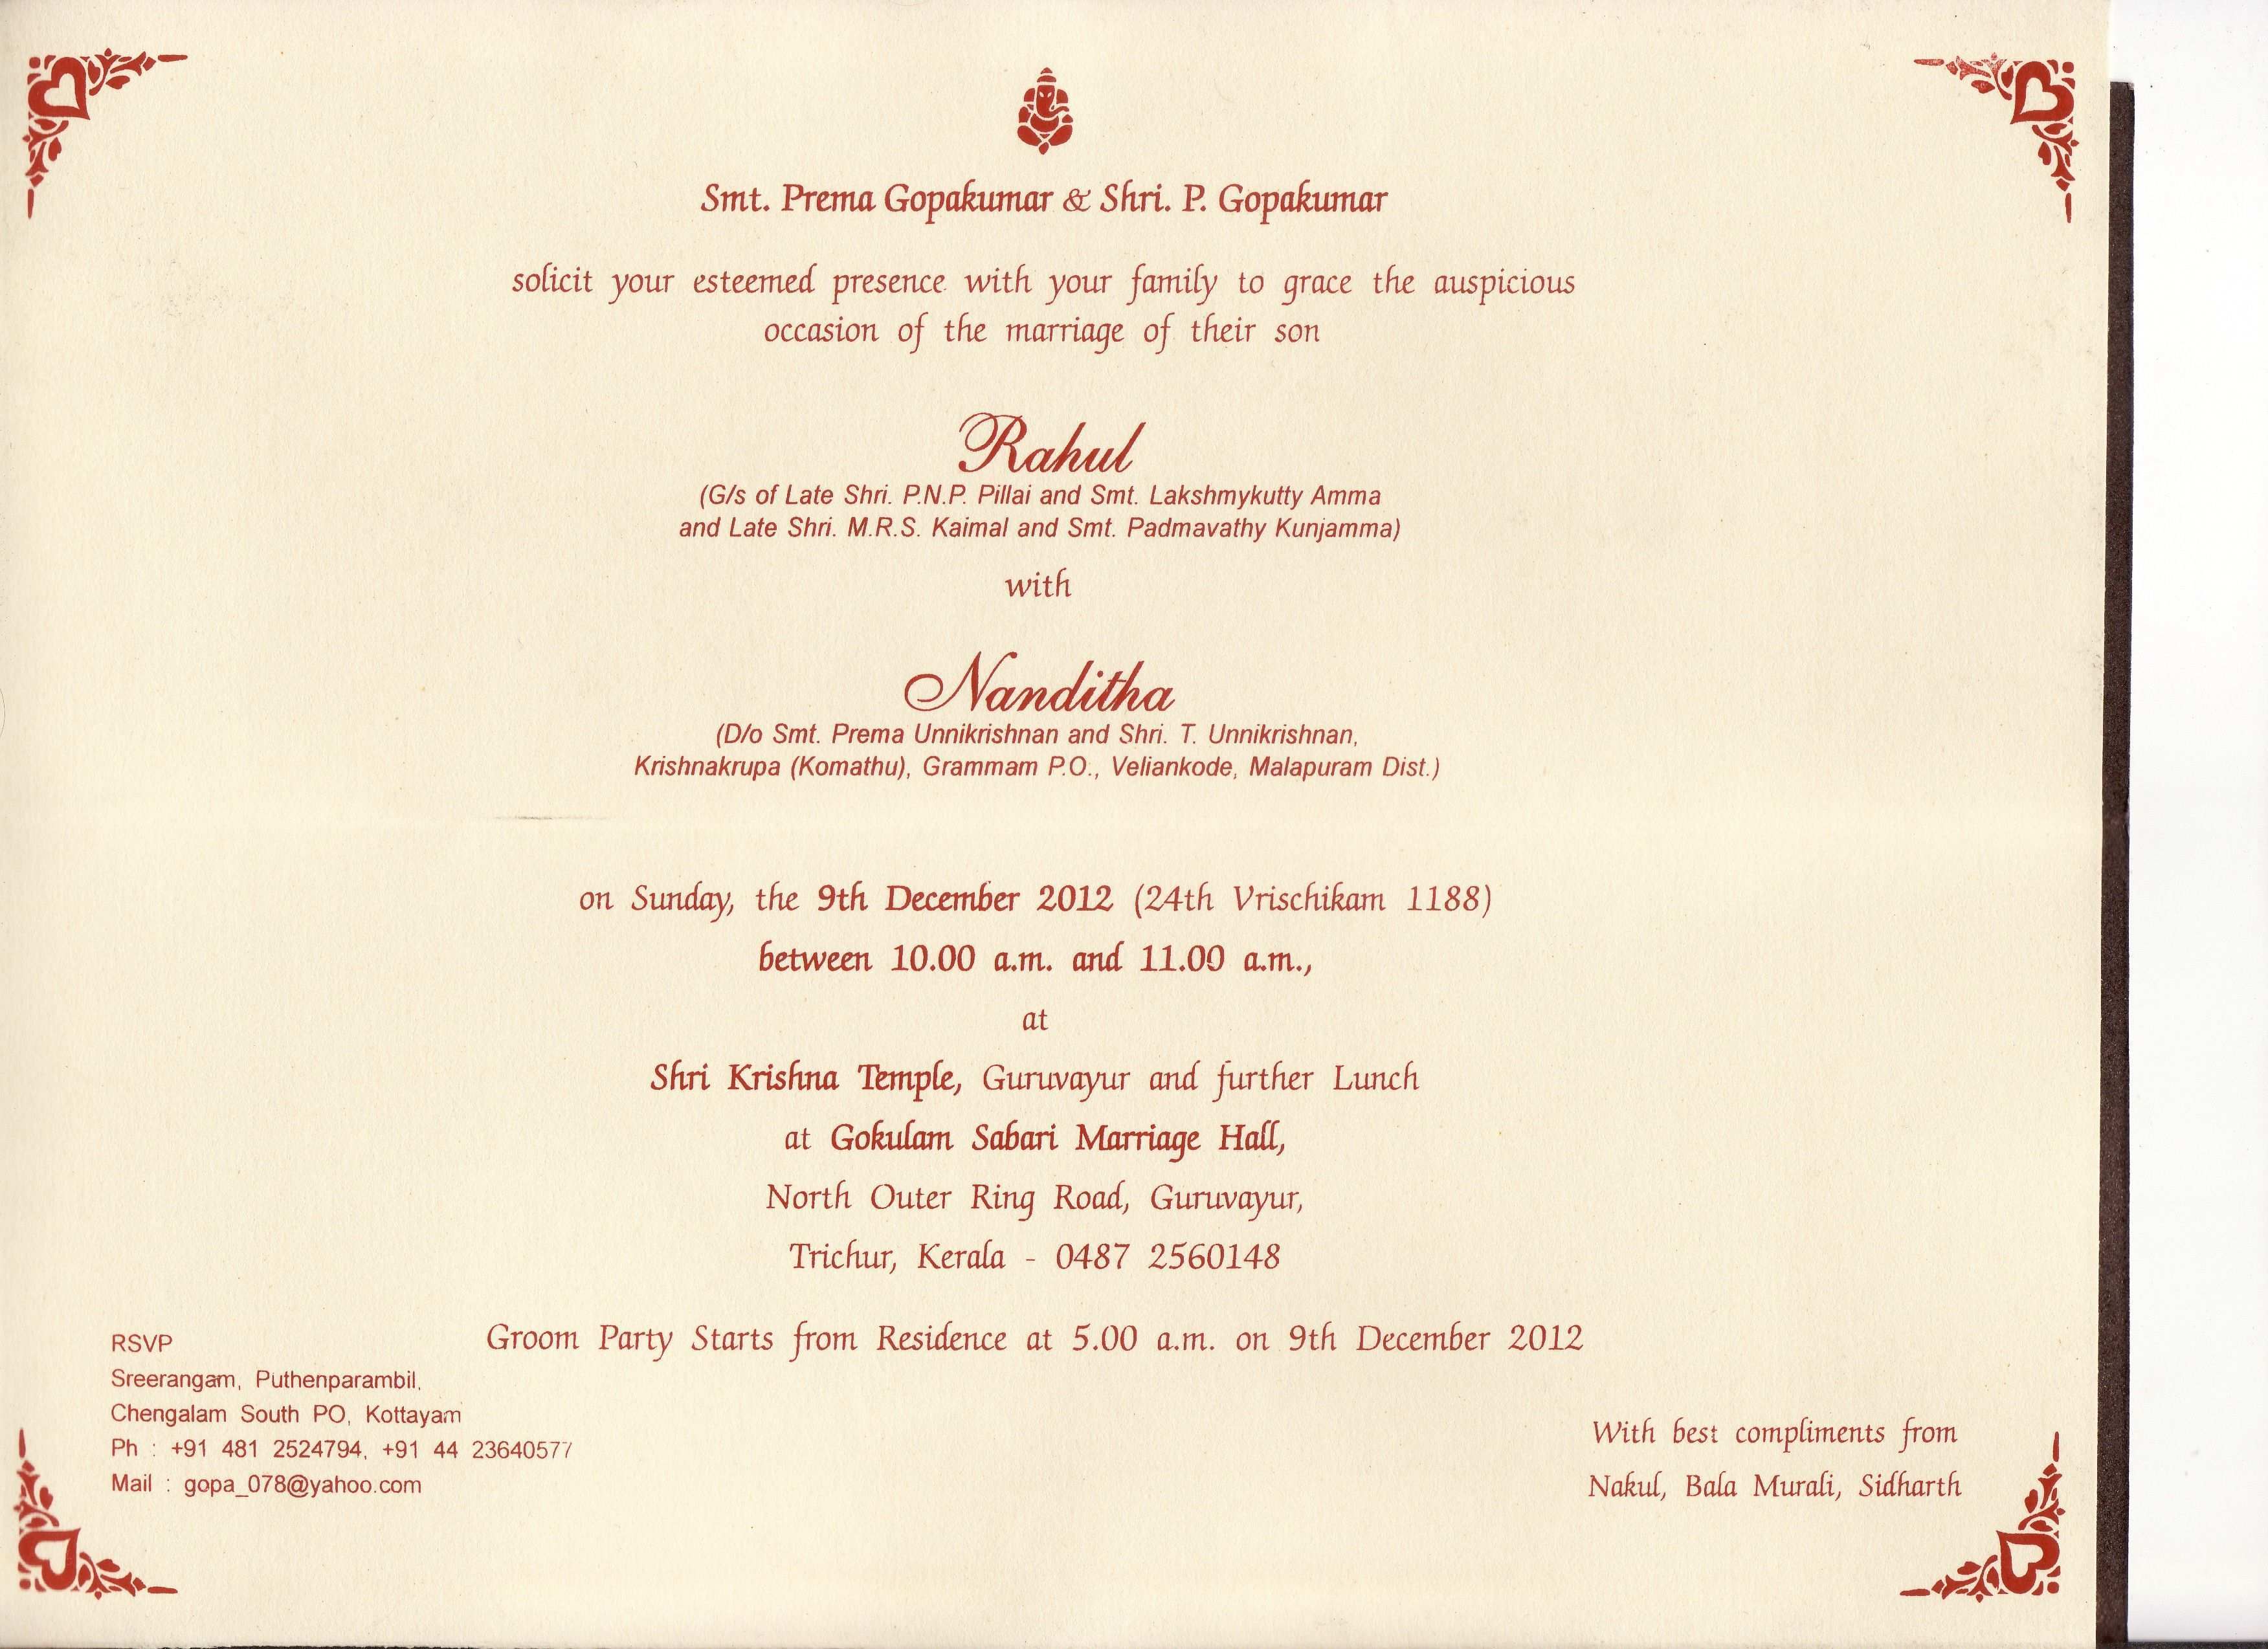 98 Adding Wedding Invitation Format Kerala Templates for Wedding Invitation Format Kerala